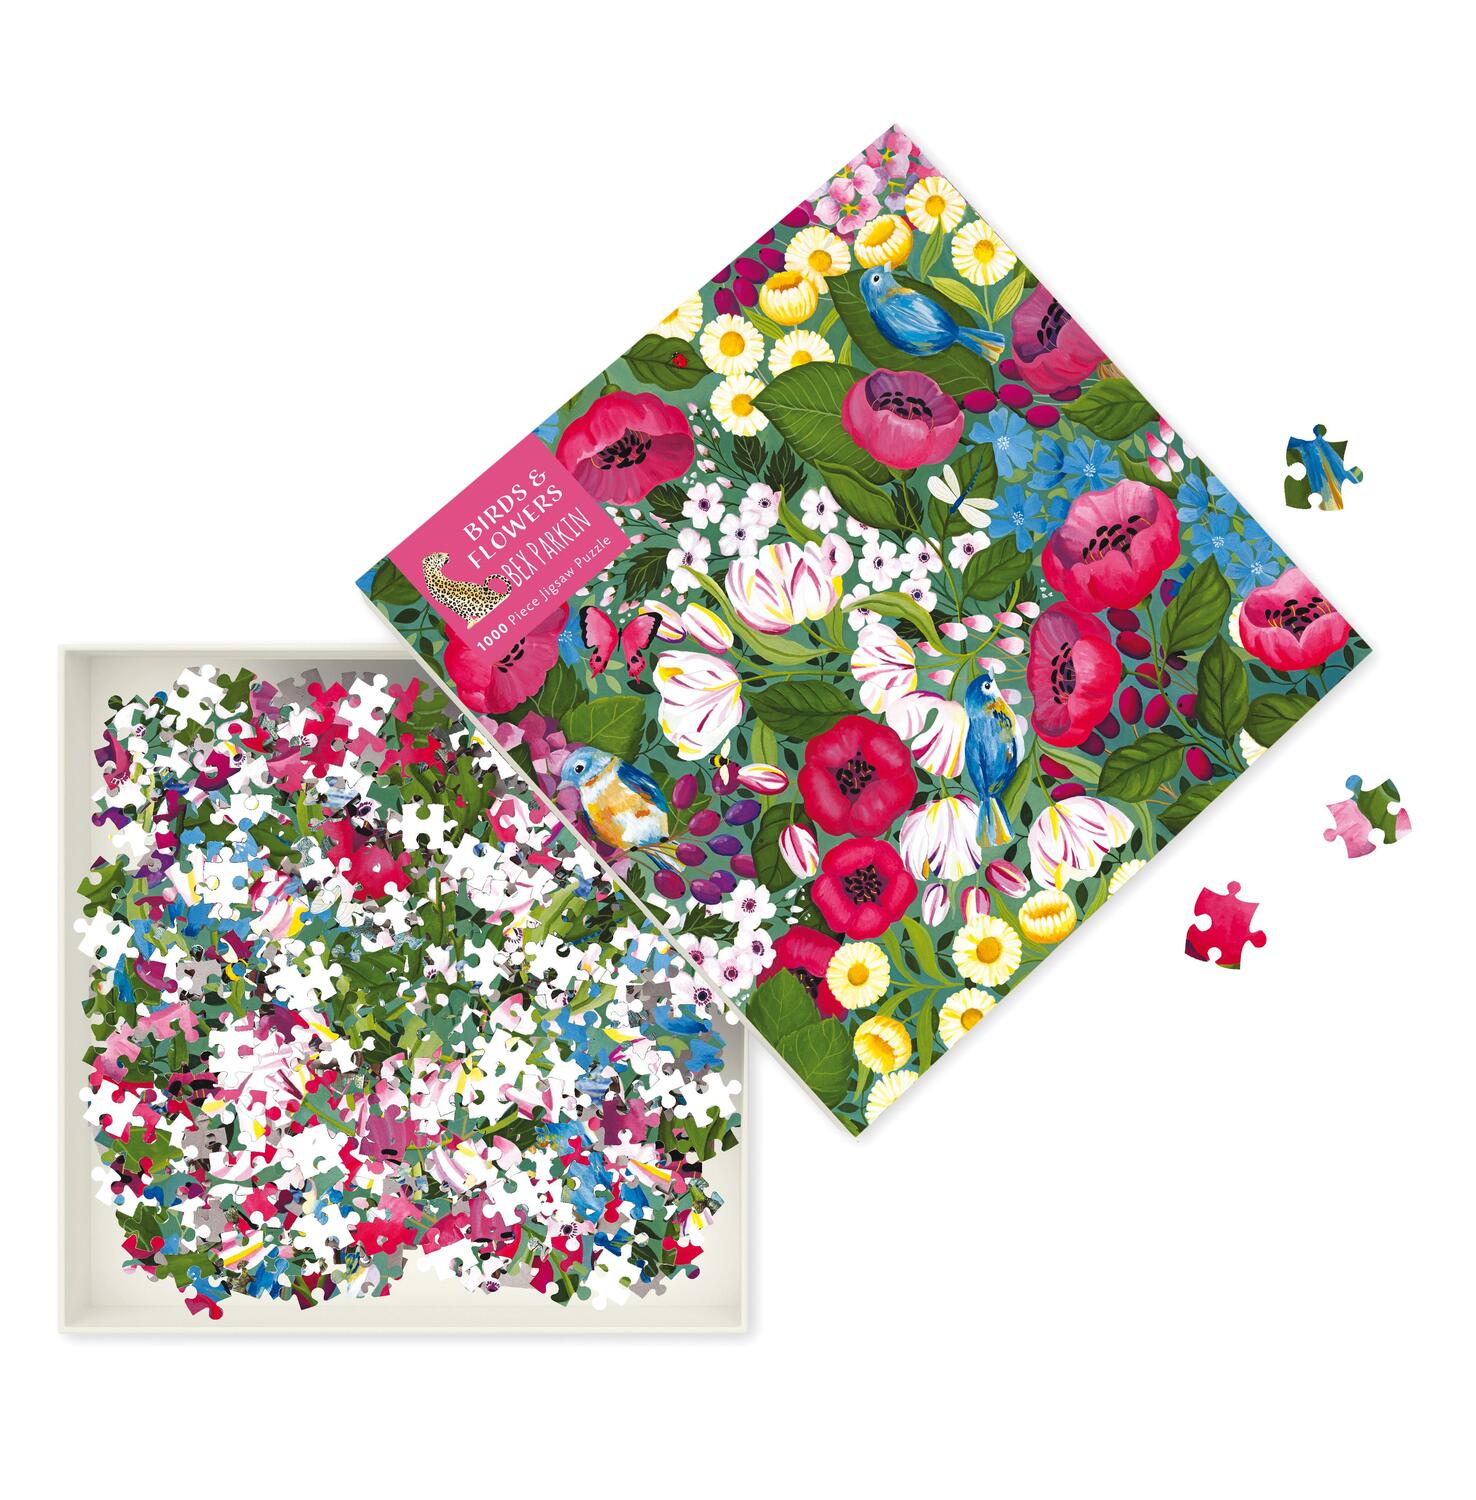 Bild: 9781839644955 | Adult Jigsaw Puzzle Bex Parkin: Birds & Flowers: 1000-Piece Jigsaw...